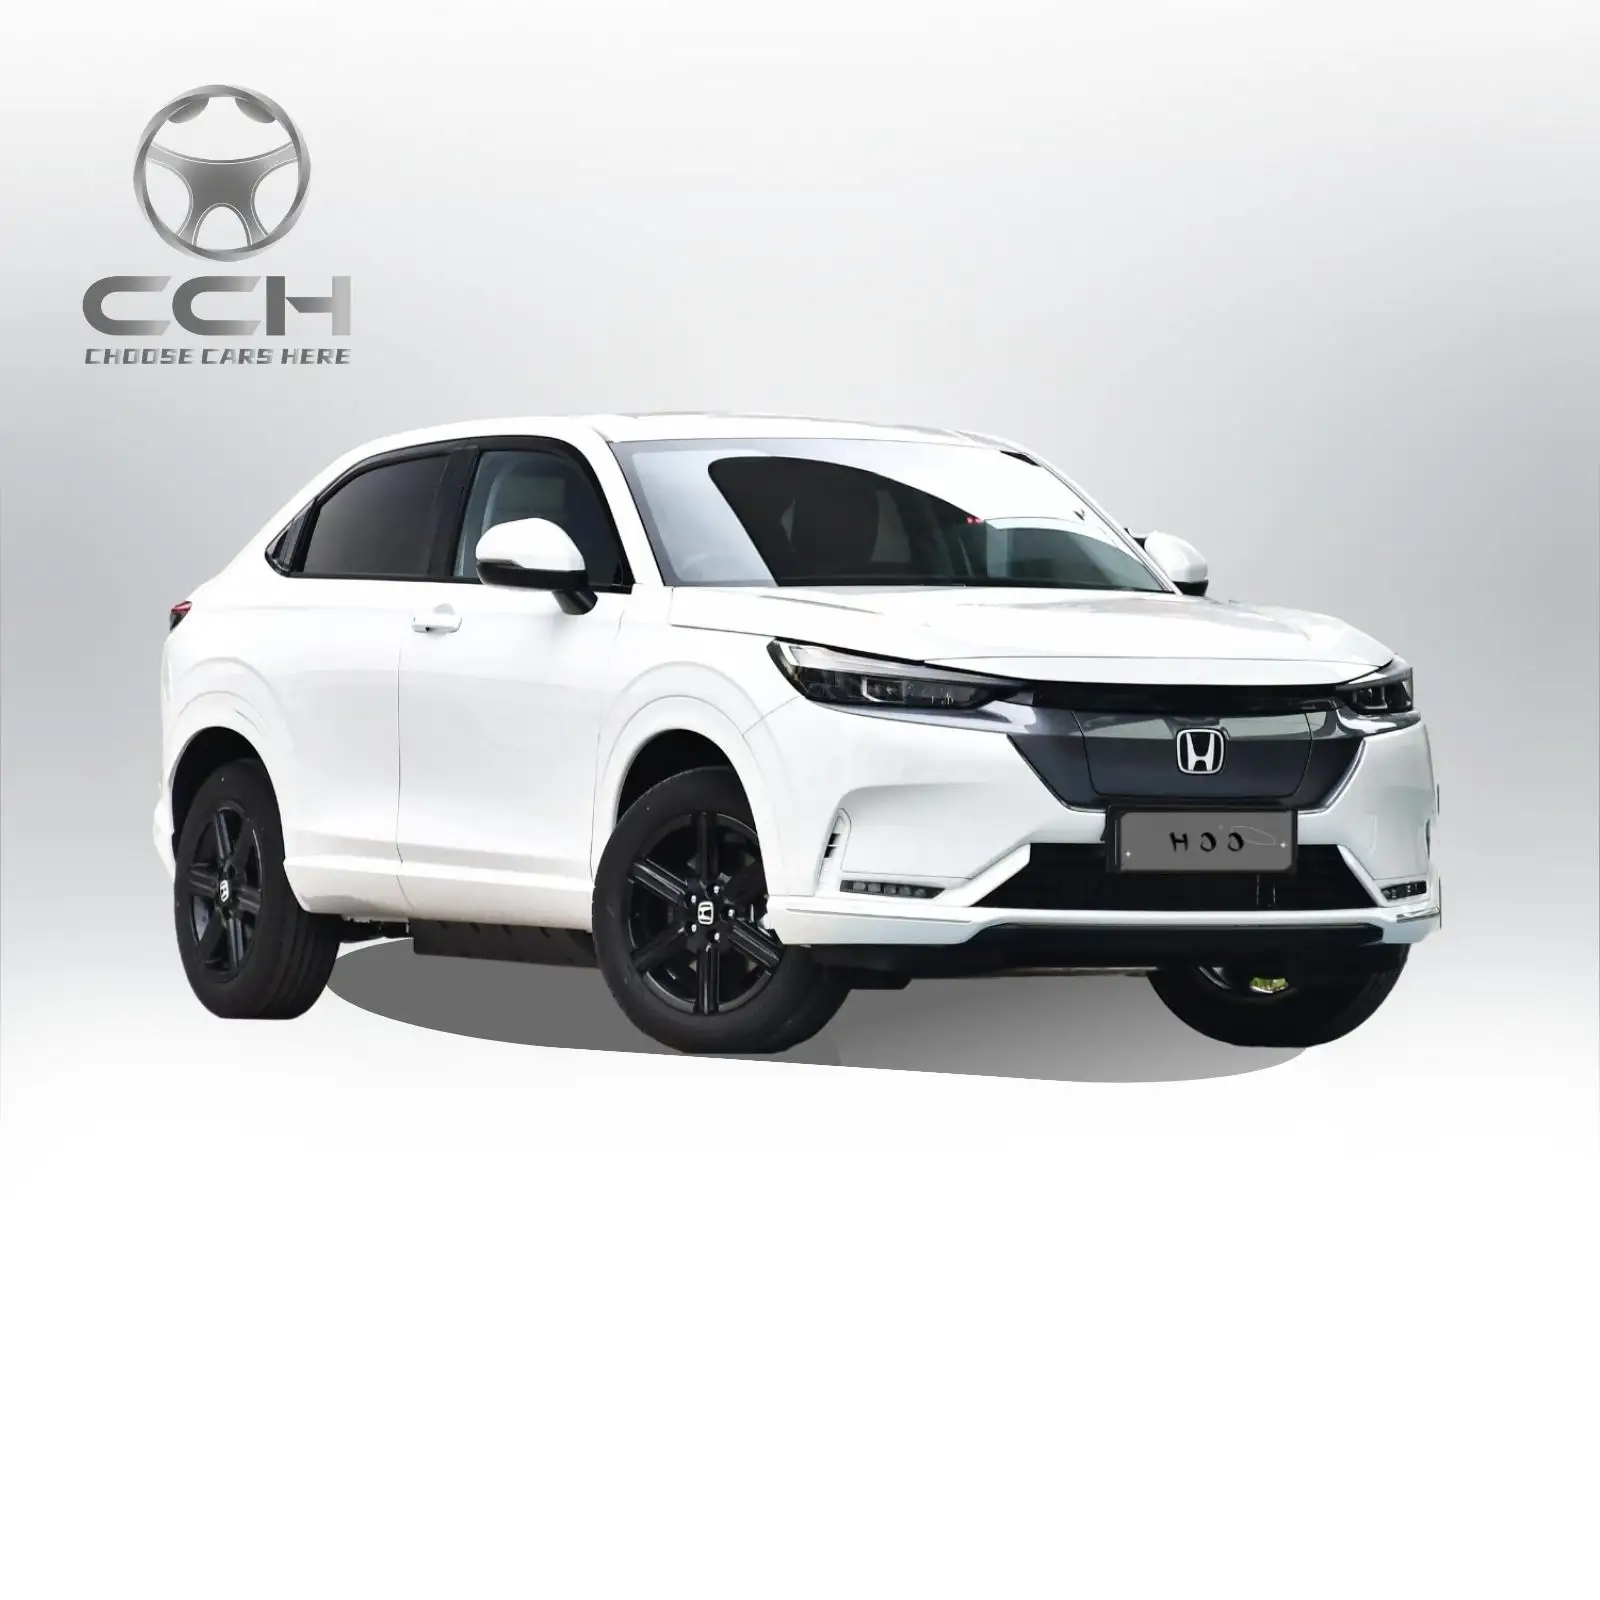 Tersedia honda enp1 Honda enc1 mobil listrik 510 km SUV EV pengiriman cepat kendaraan listrik mobil Suv mewah mobil EV baru (Deposit)